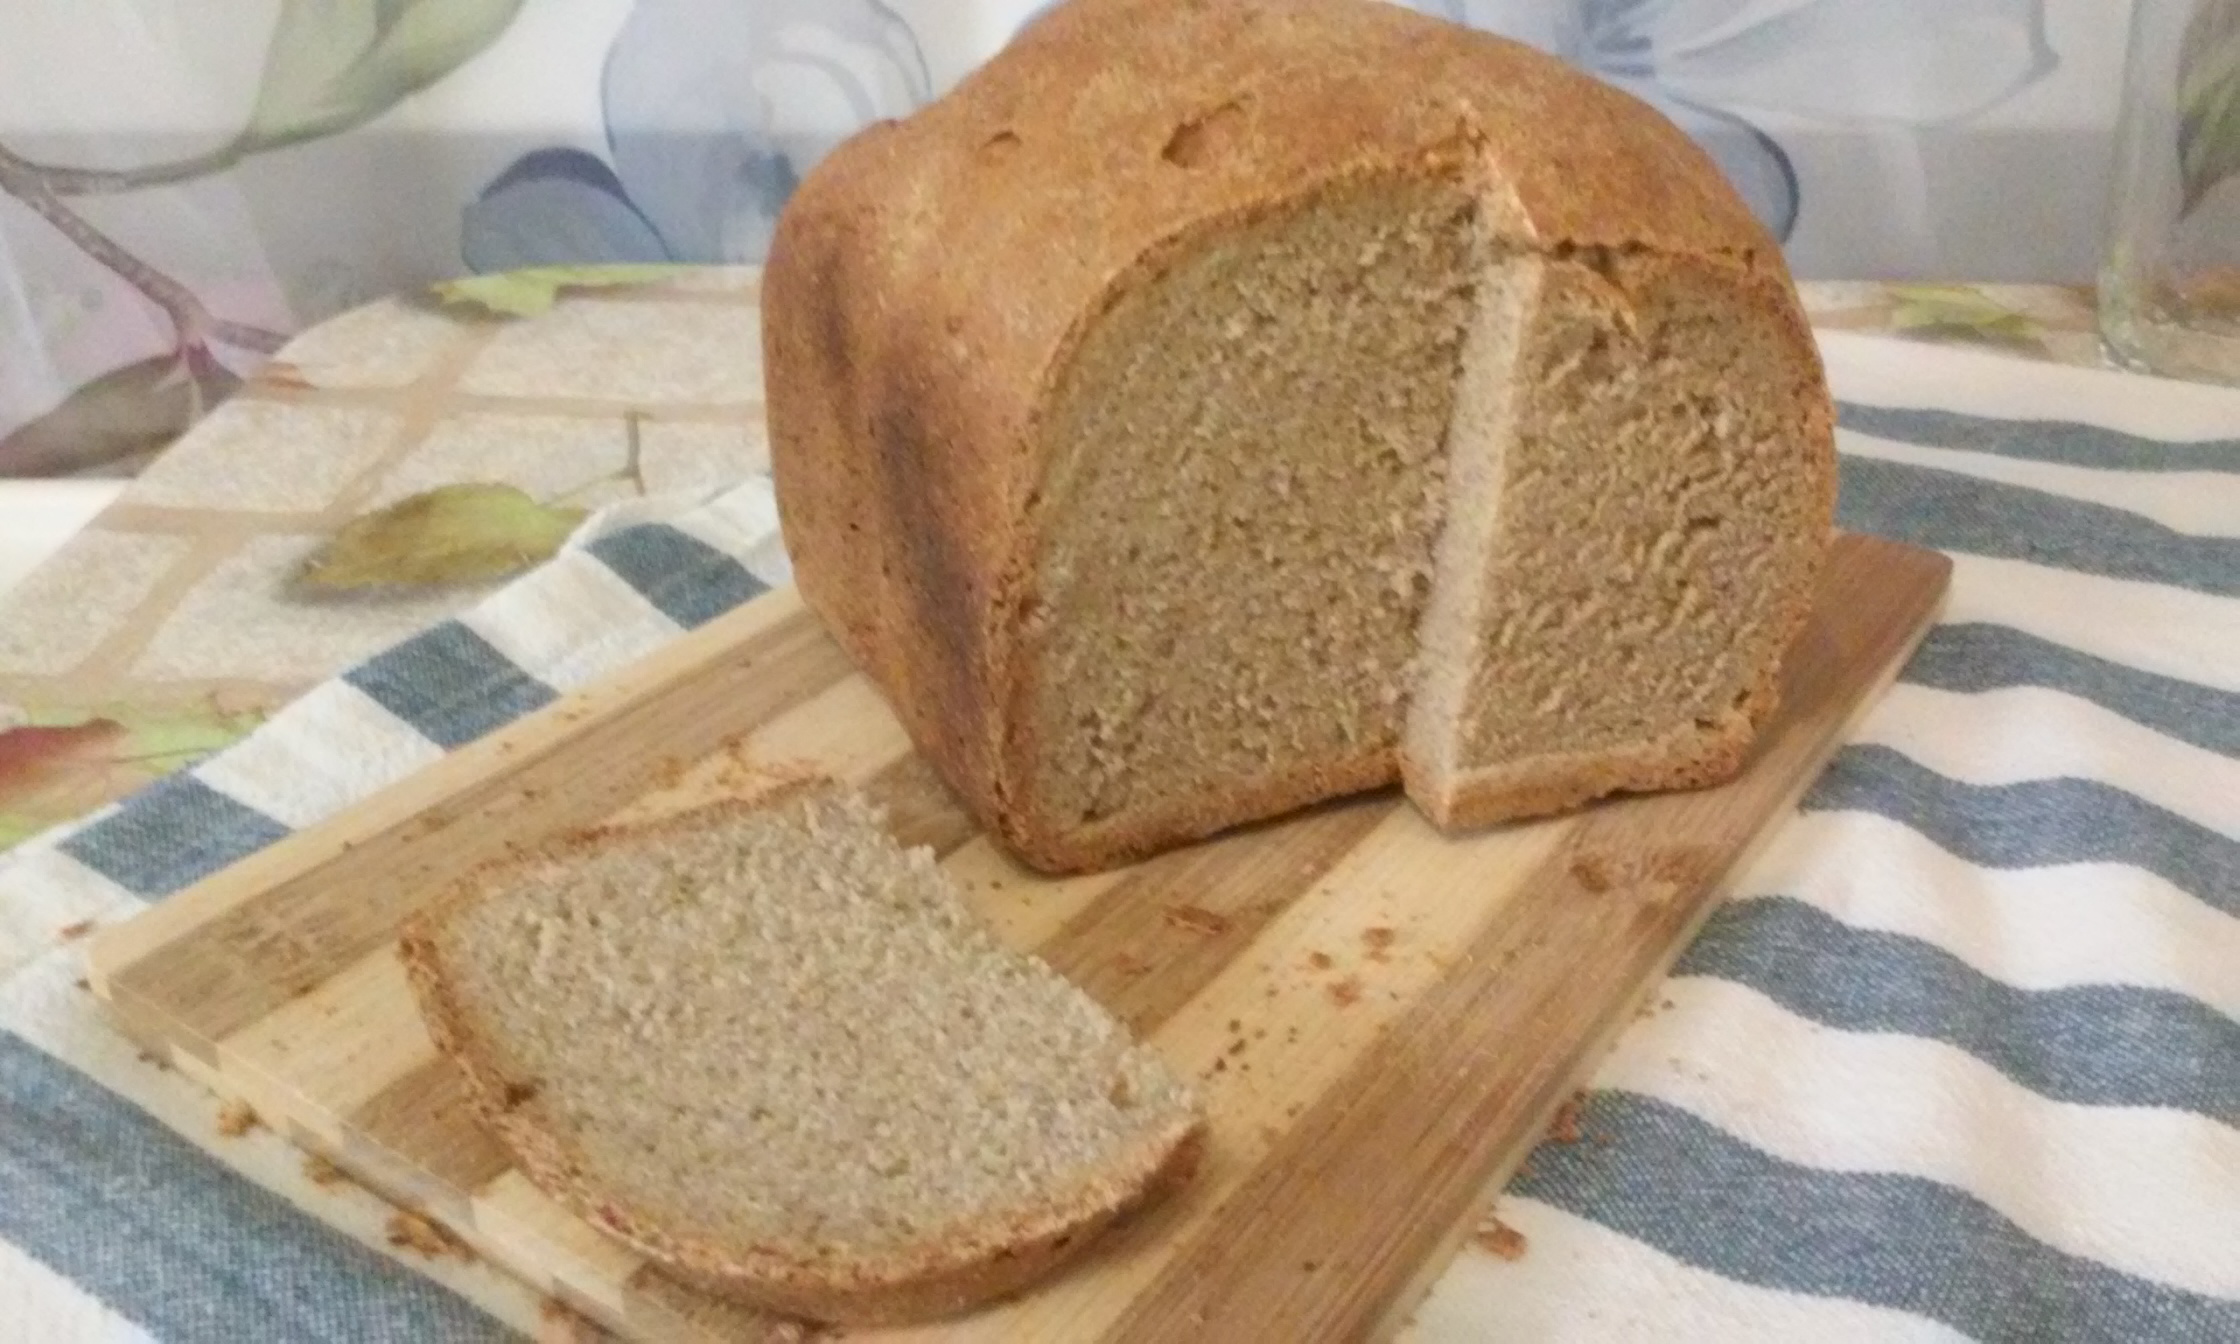 Хлеб пшеничный ржаной на сухих дрожжах. Ржано-пшеничный хлеб. Ржано-пшеничный хлеб ржано-пшеничный хлеб. Хлеб пшеничный бездрожжевой. Ржано-пшеничный хлеб в хлебопечке.